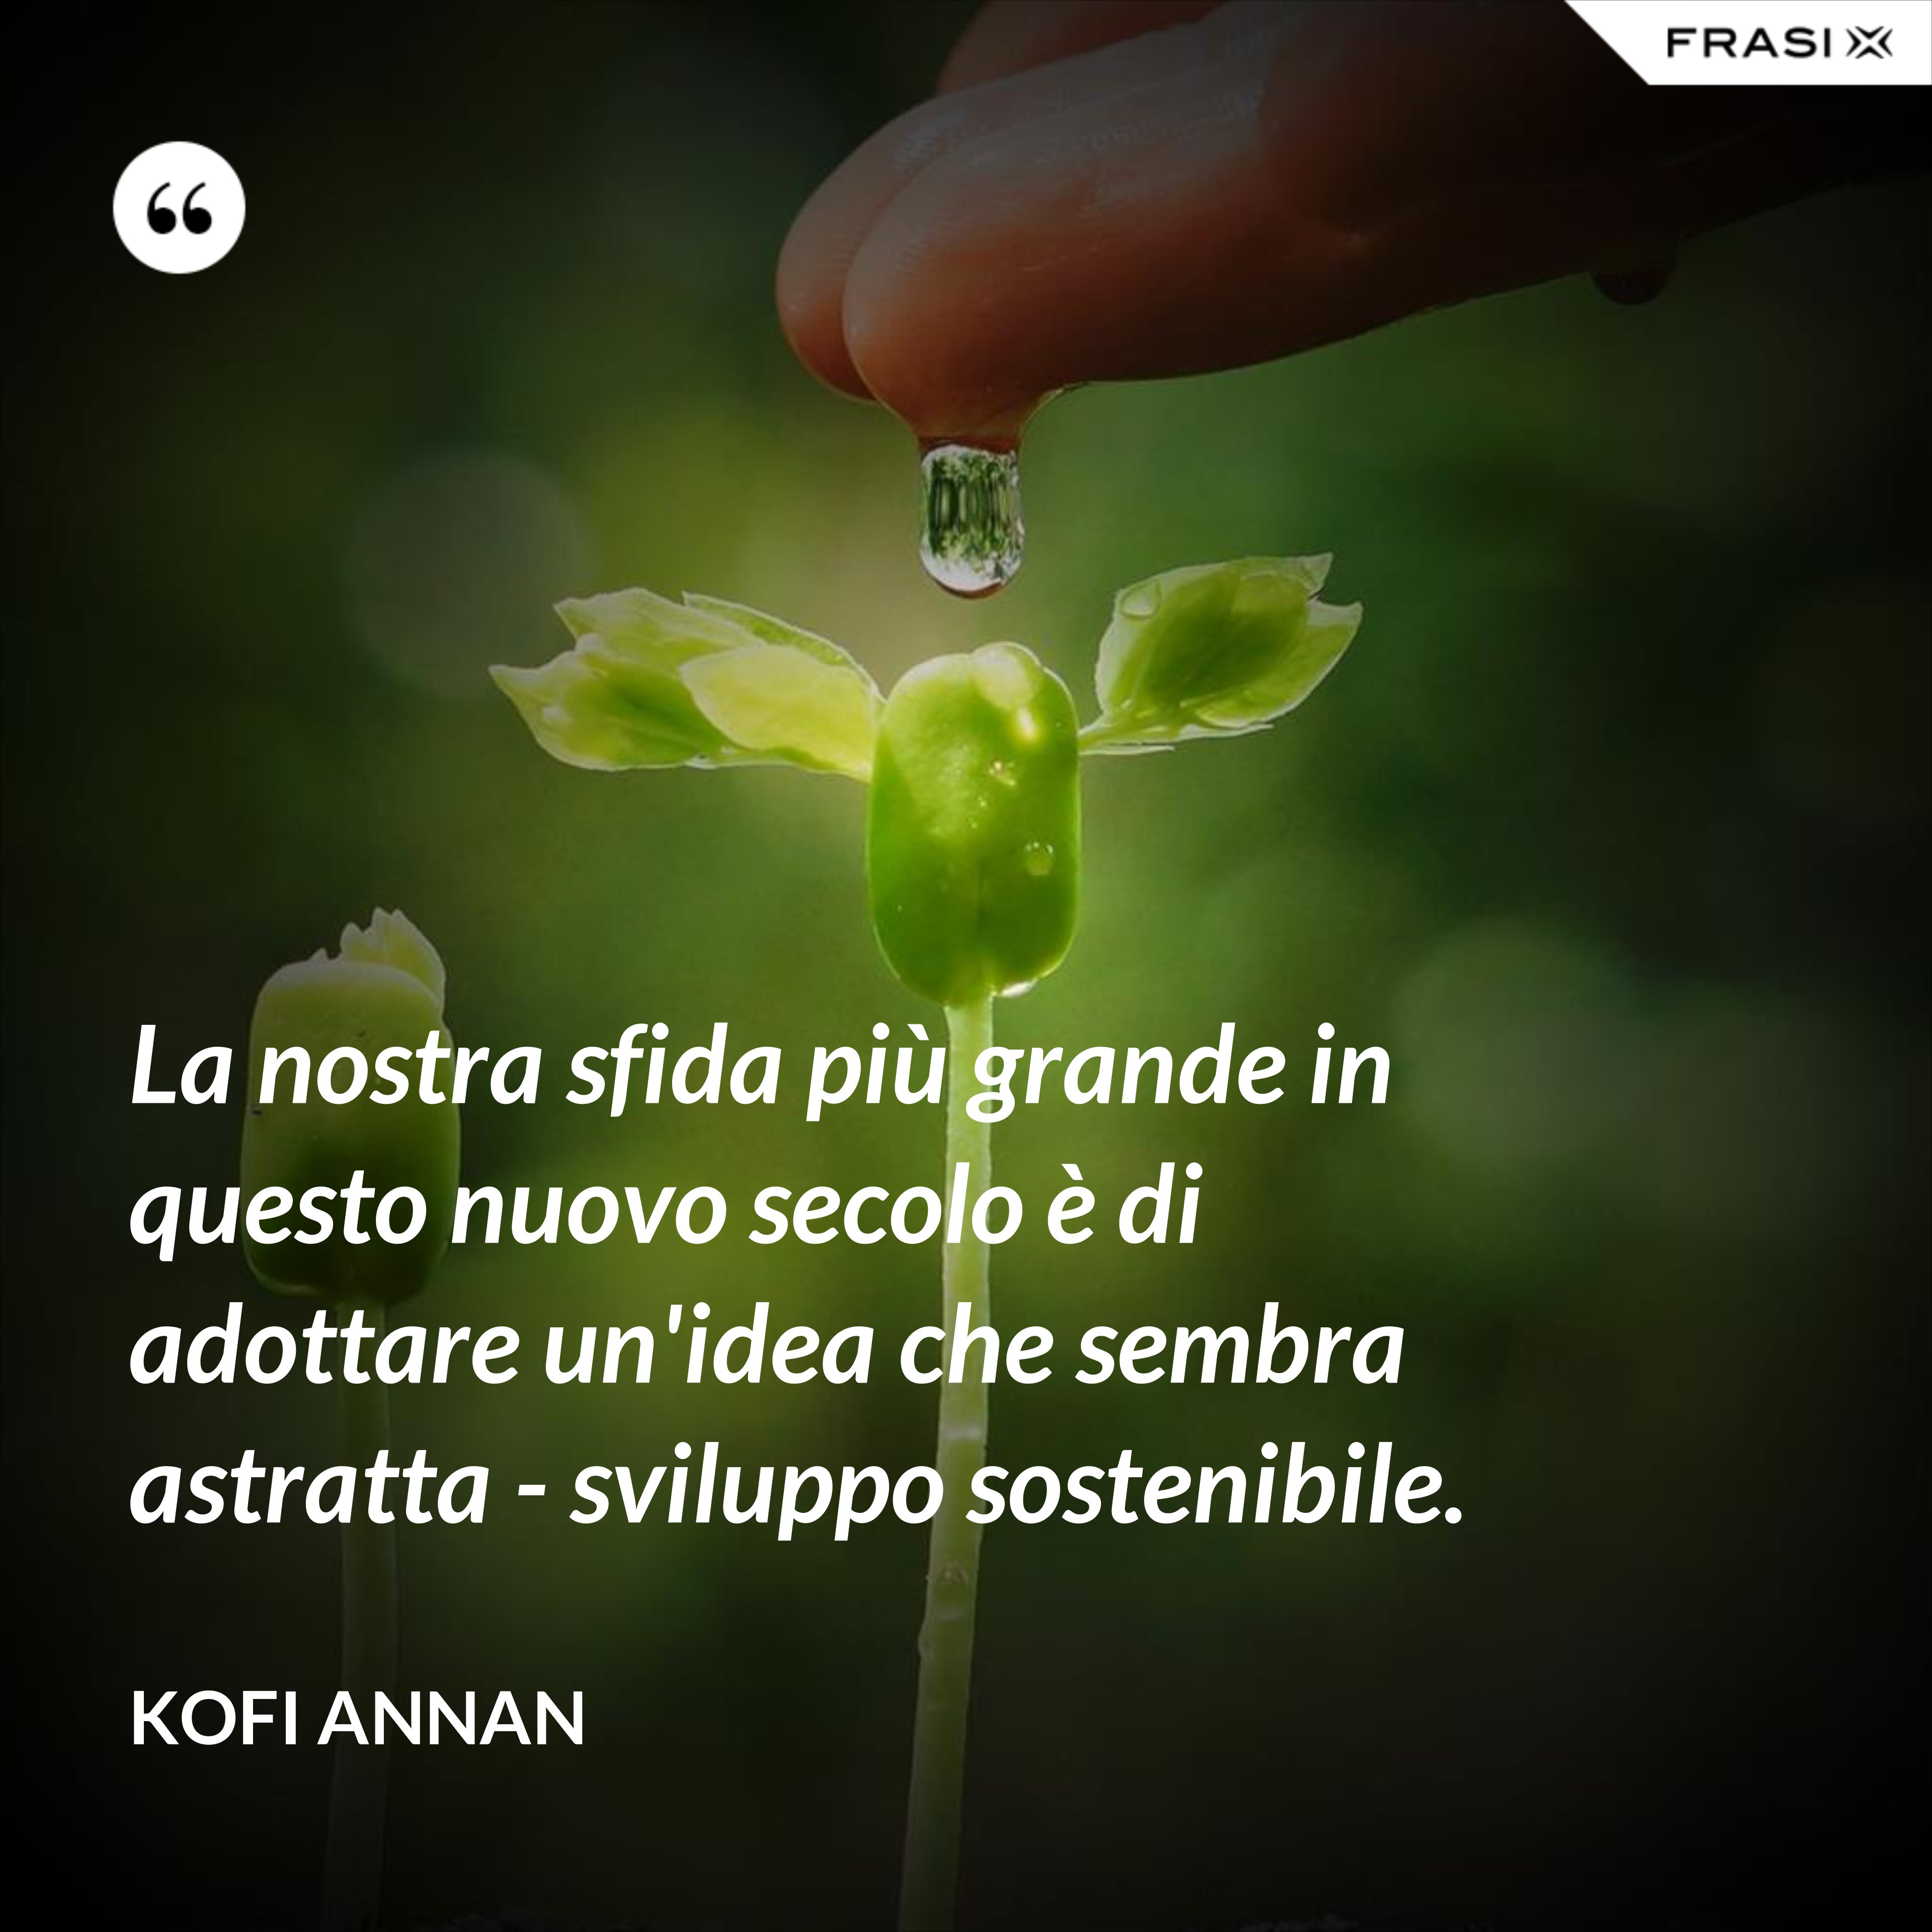 La nostra sfida più grande in questo nuovo secolo è di adottare un'idea che sembra astratta - sviluppo sostenibile. - Kofi Annan